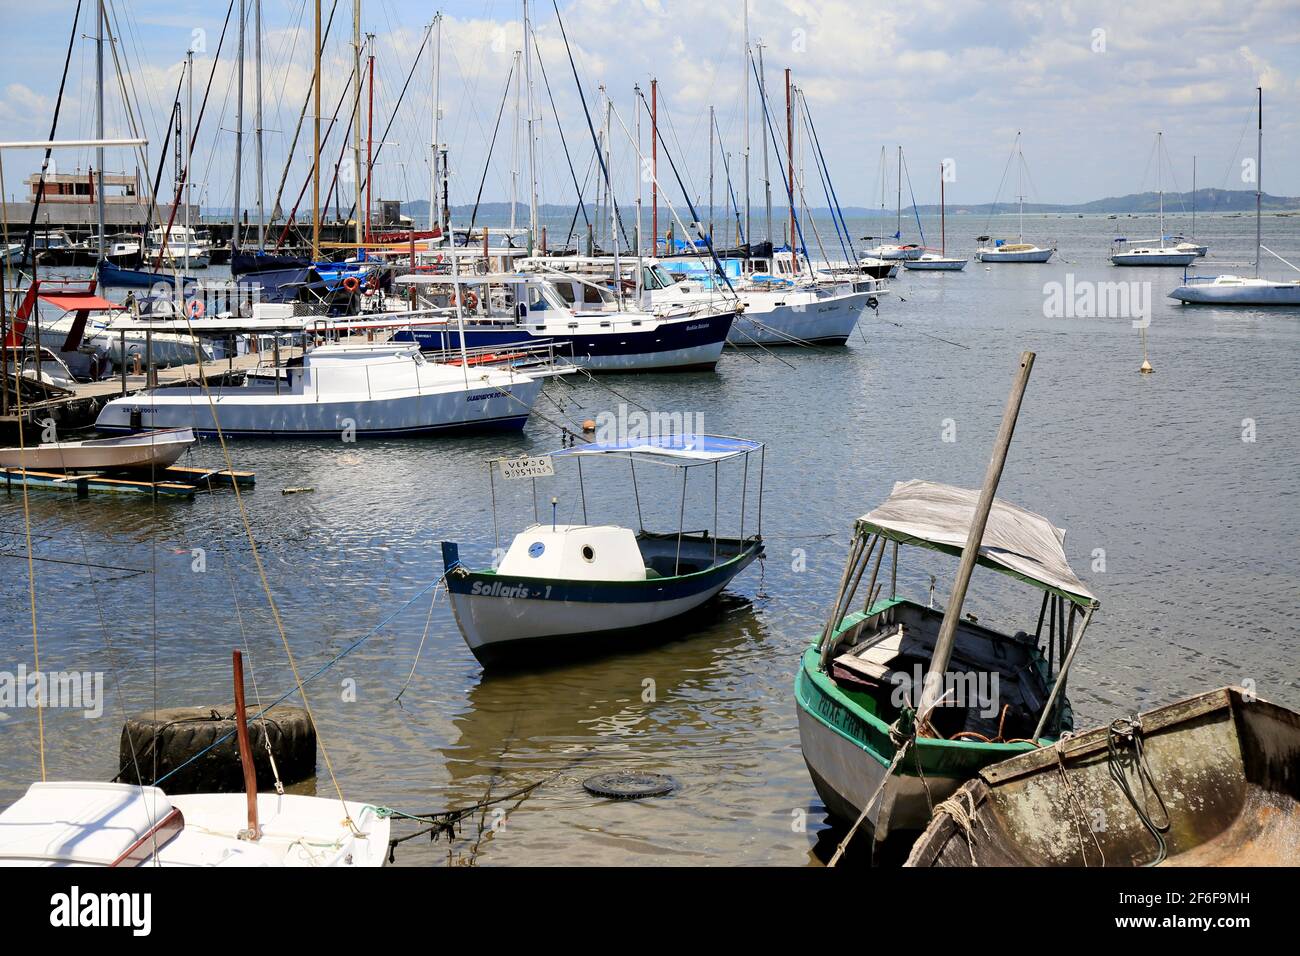 salvador, bahía, brasil 4 de enero de 2021: Barcos se ven en un puerto  deportivo en